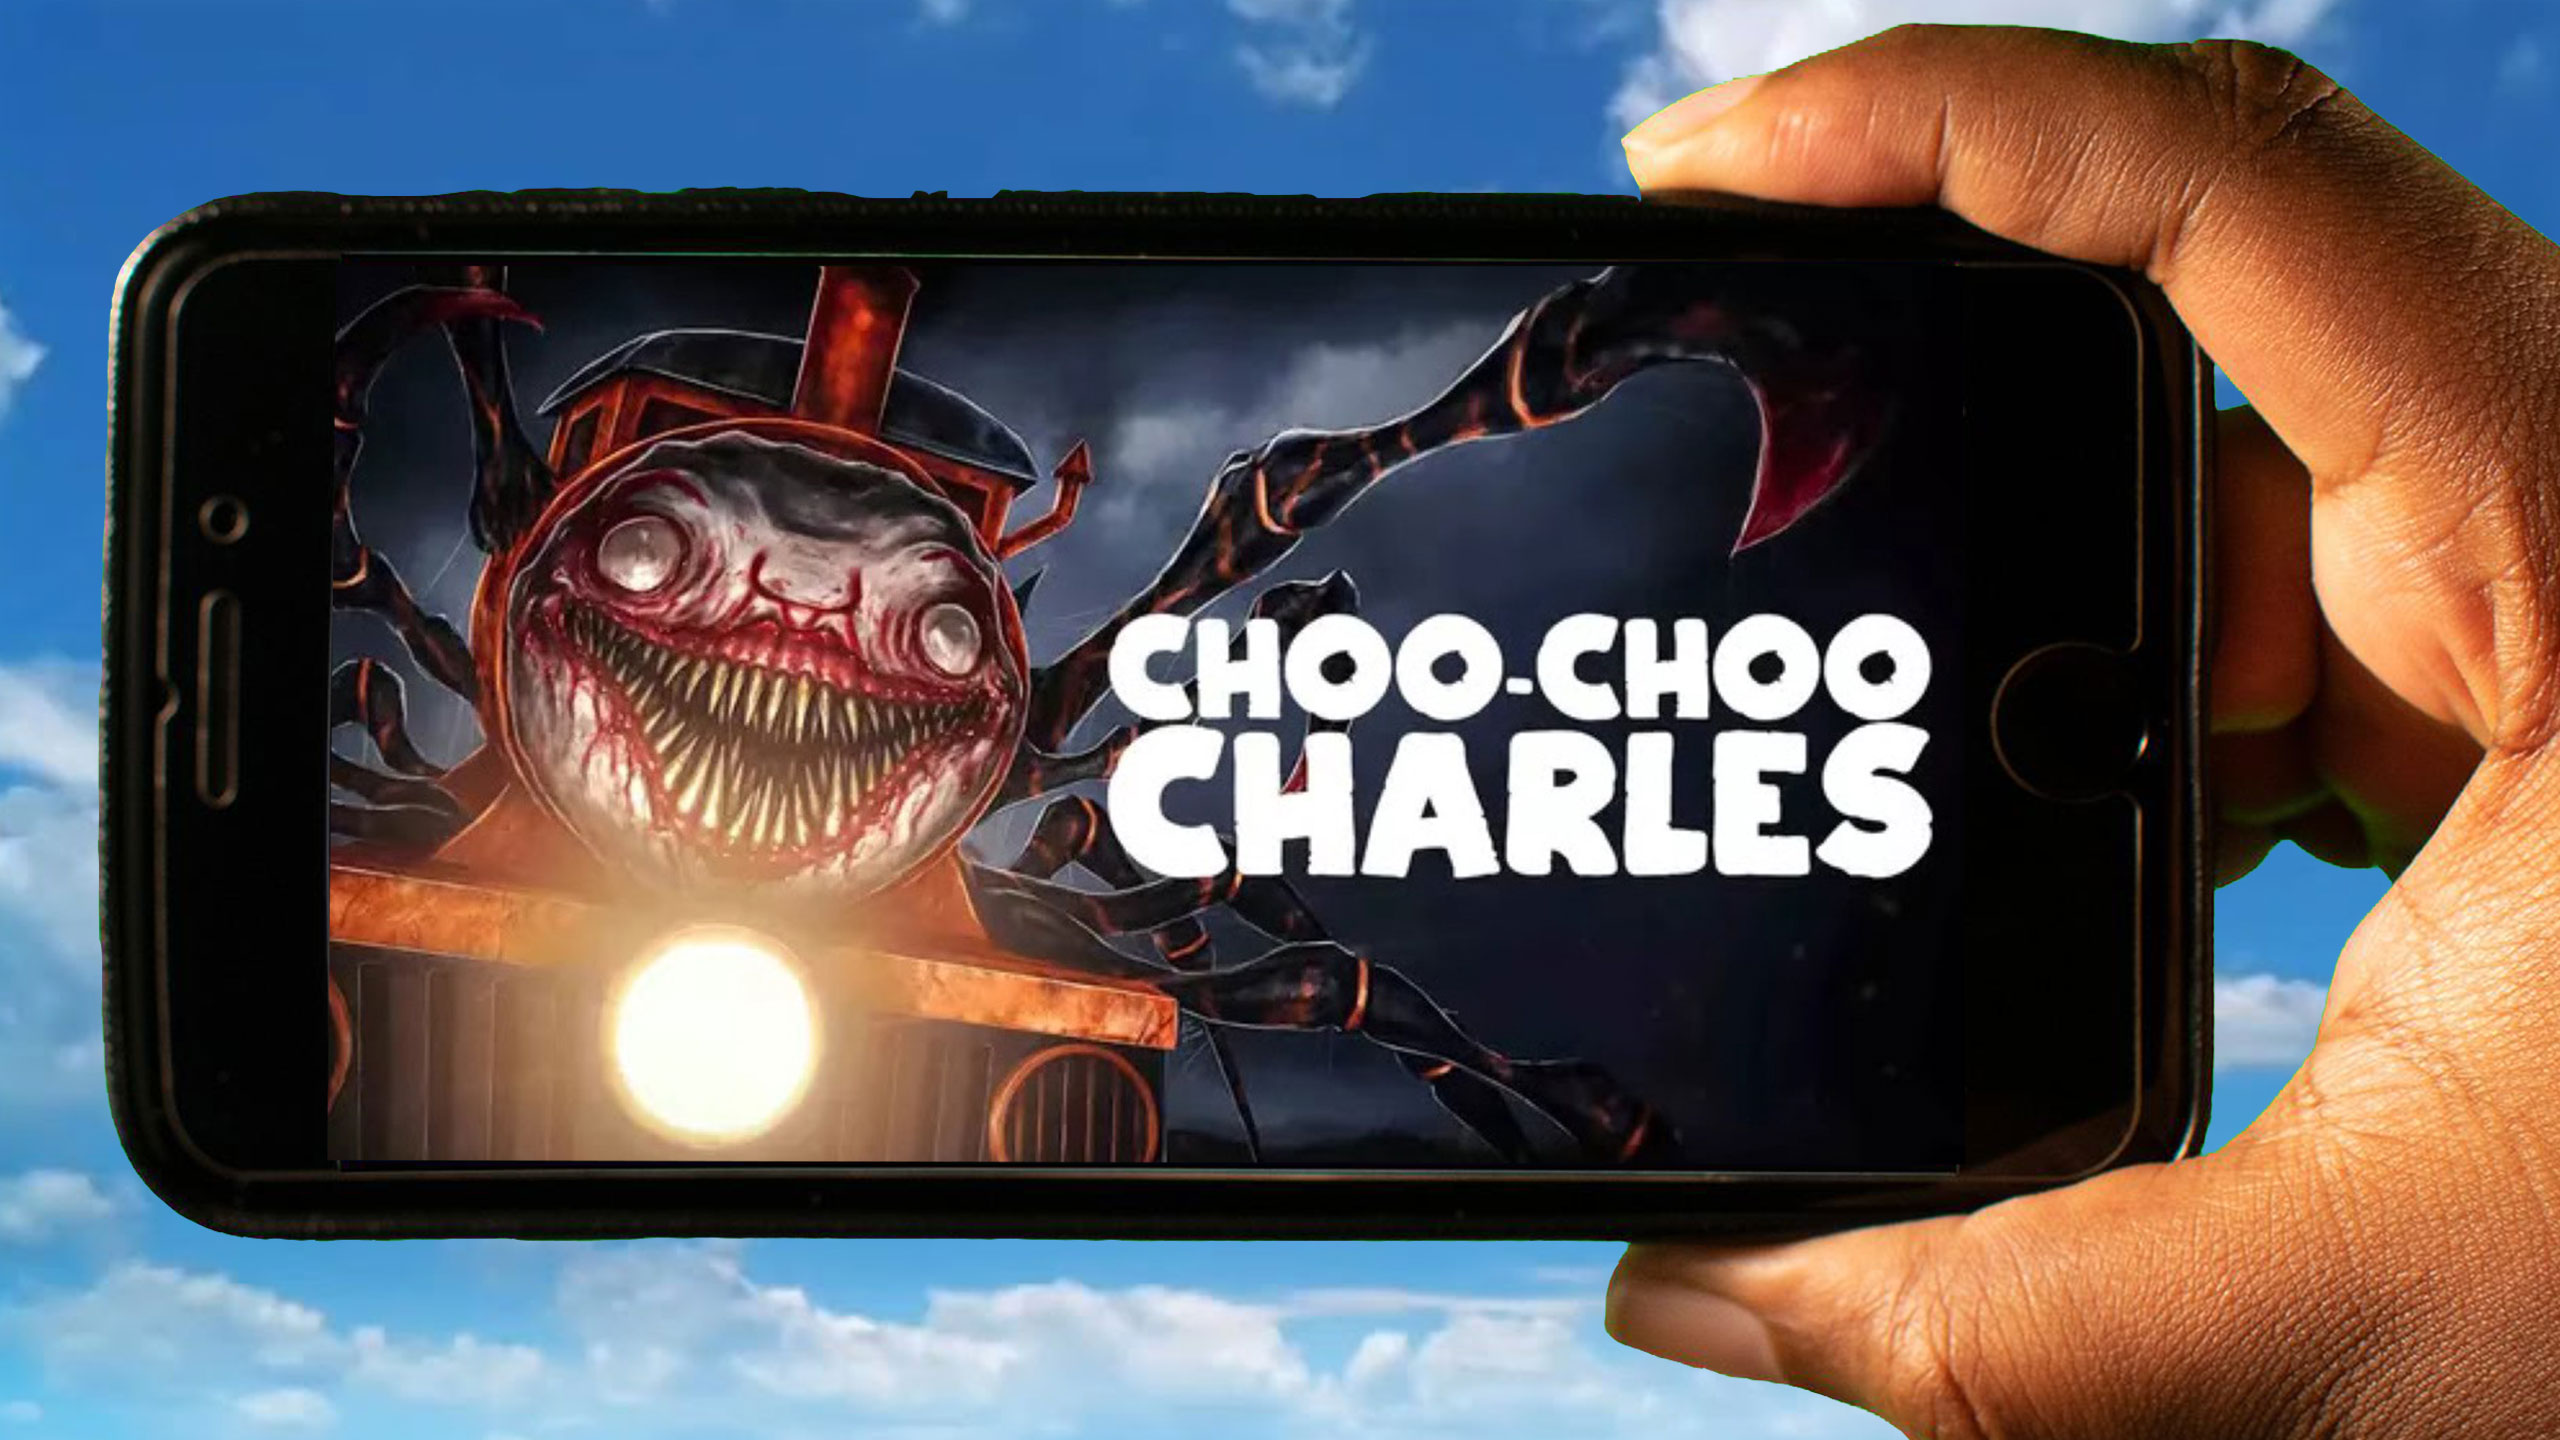 😍 CHOO CHOO CHARLES MOBILE DOWNLOAD, HOW TO DOWNLOAD CHOO CHOO CHARLES